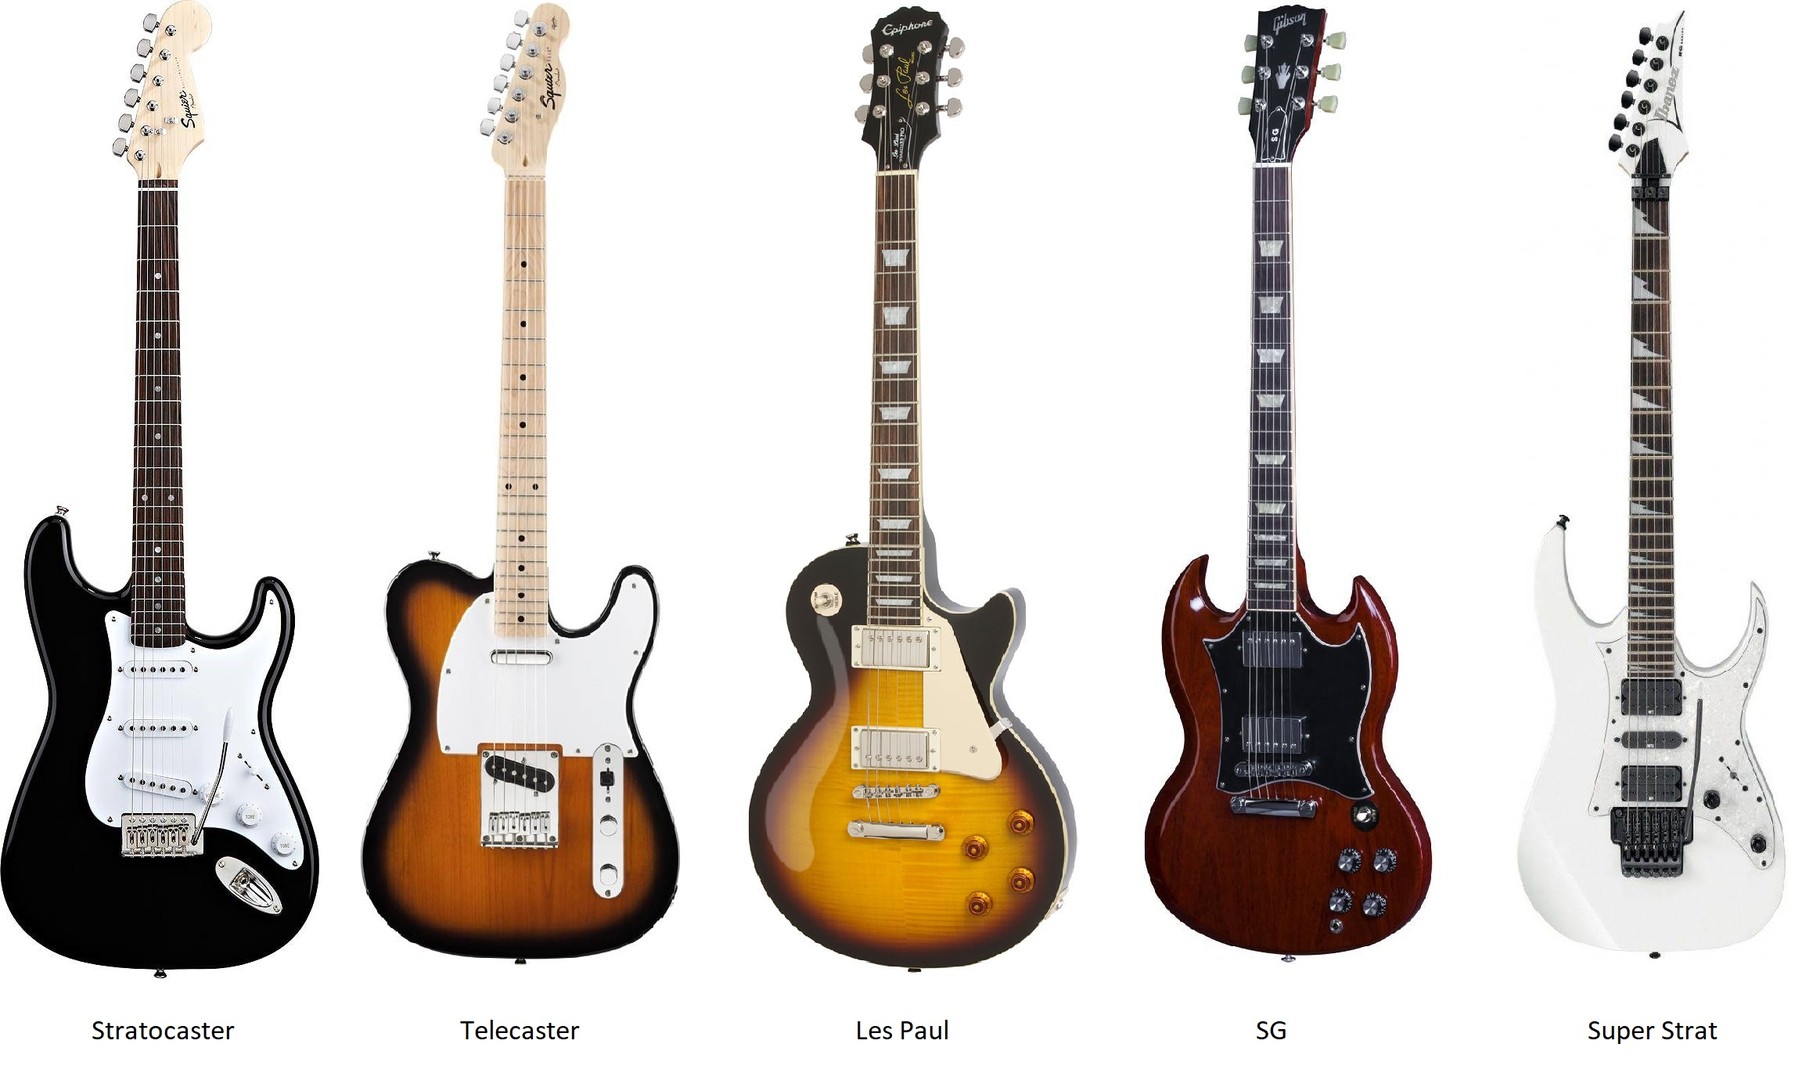 Виды гитар и их названия с фото